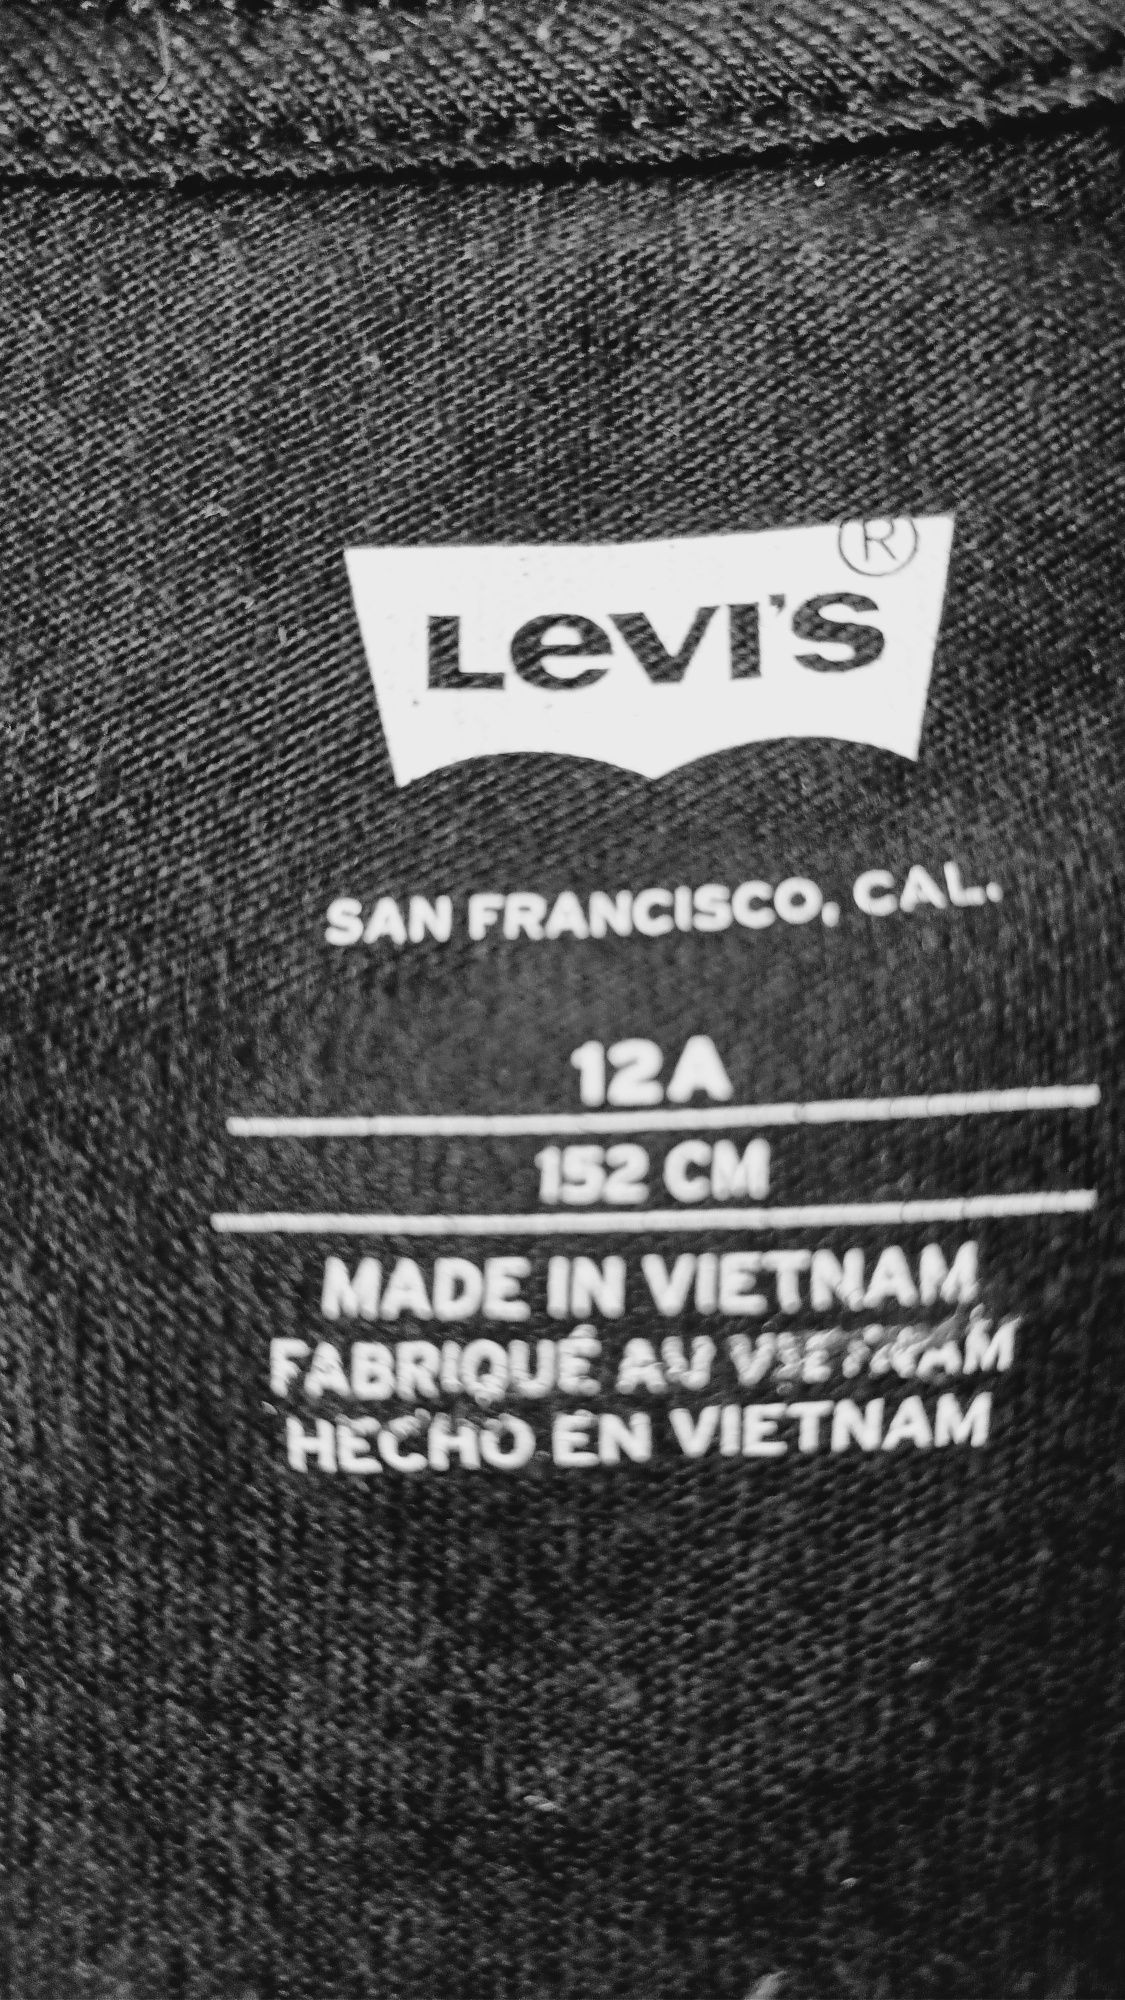 Bluzka dziewczęca "LEVI'S", wzrost 152cm, jak nowa